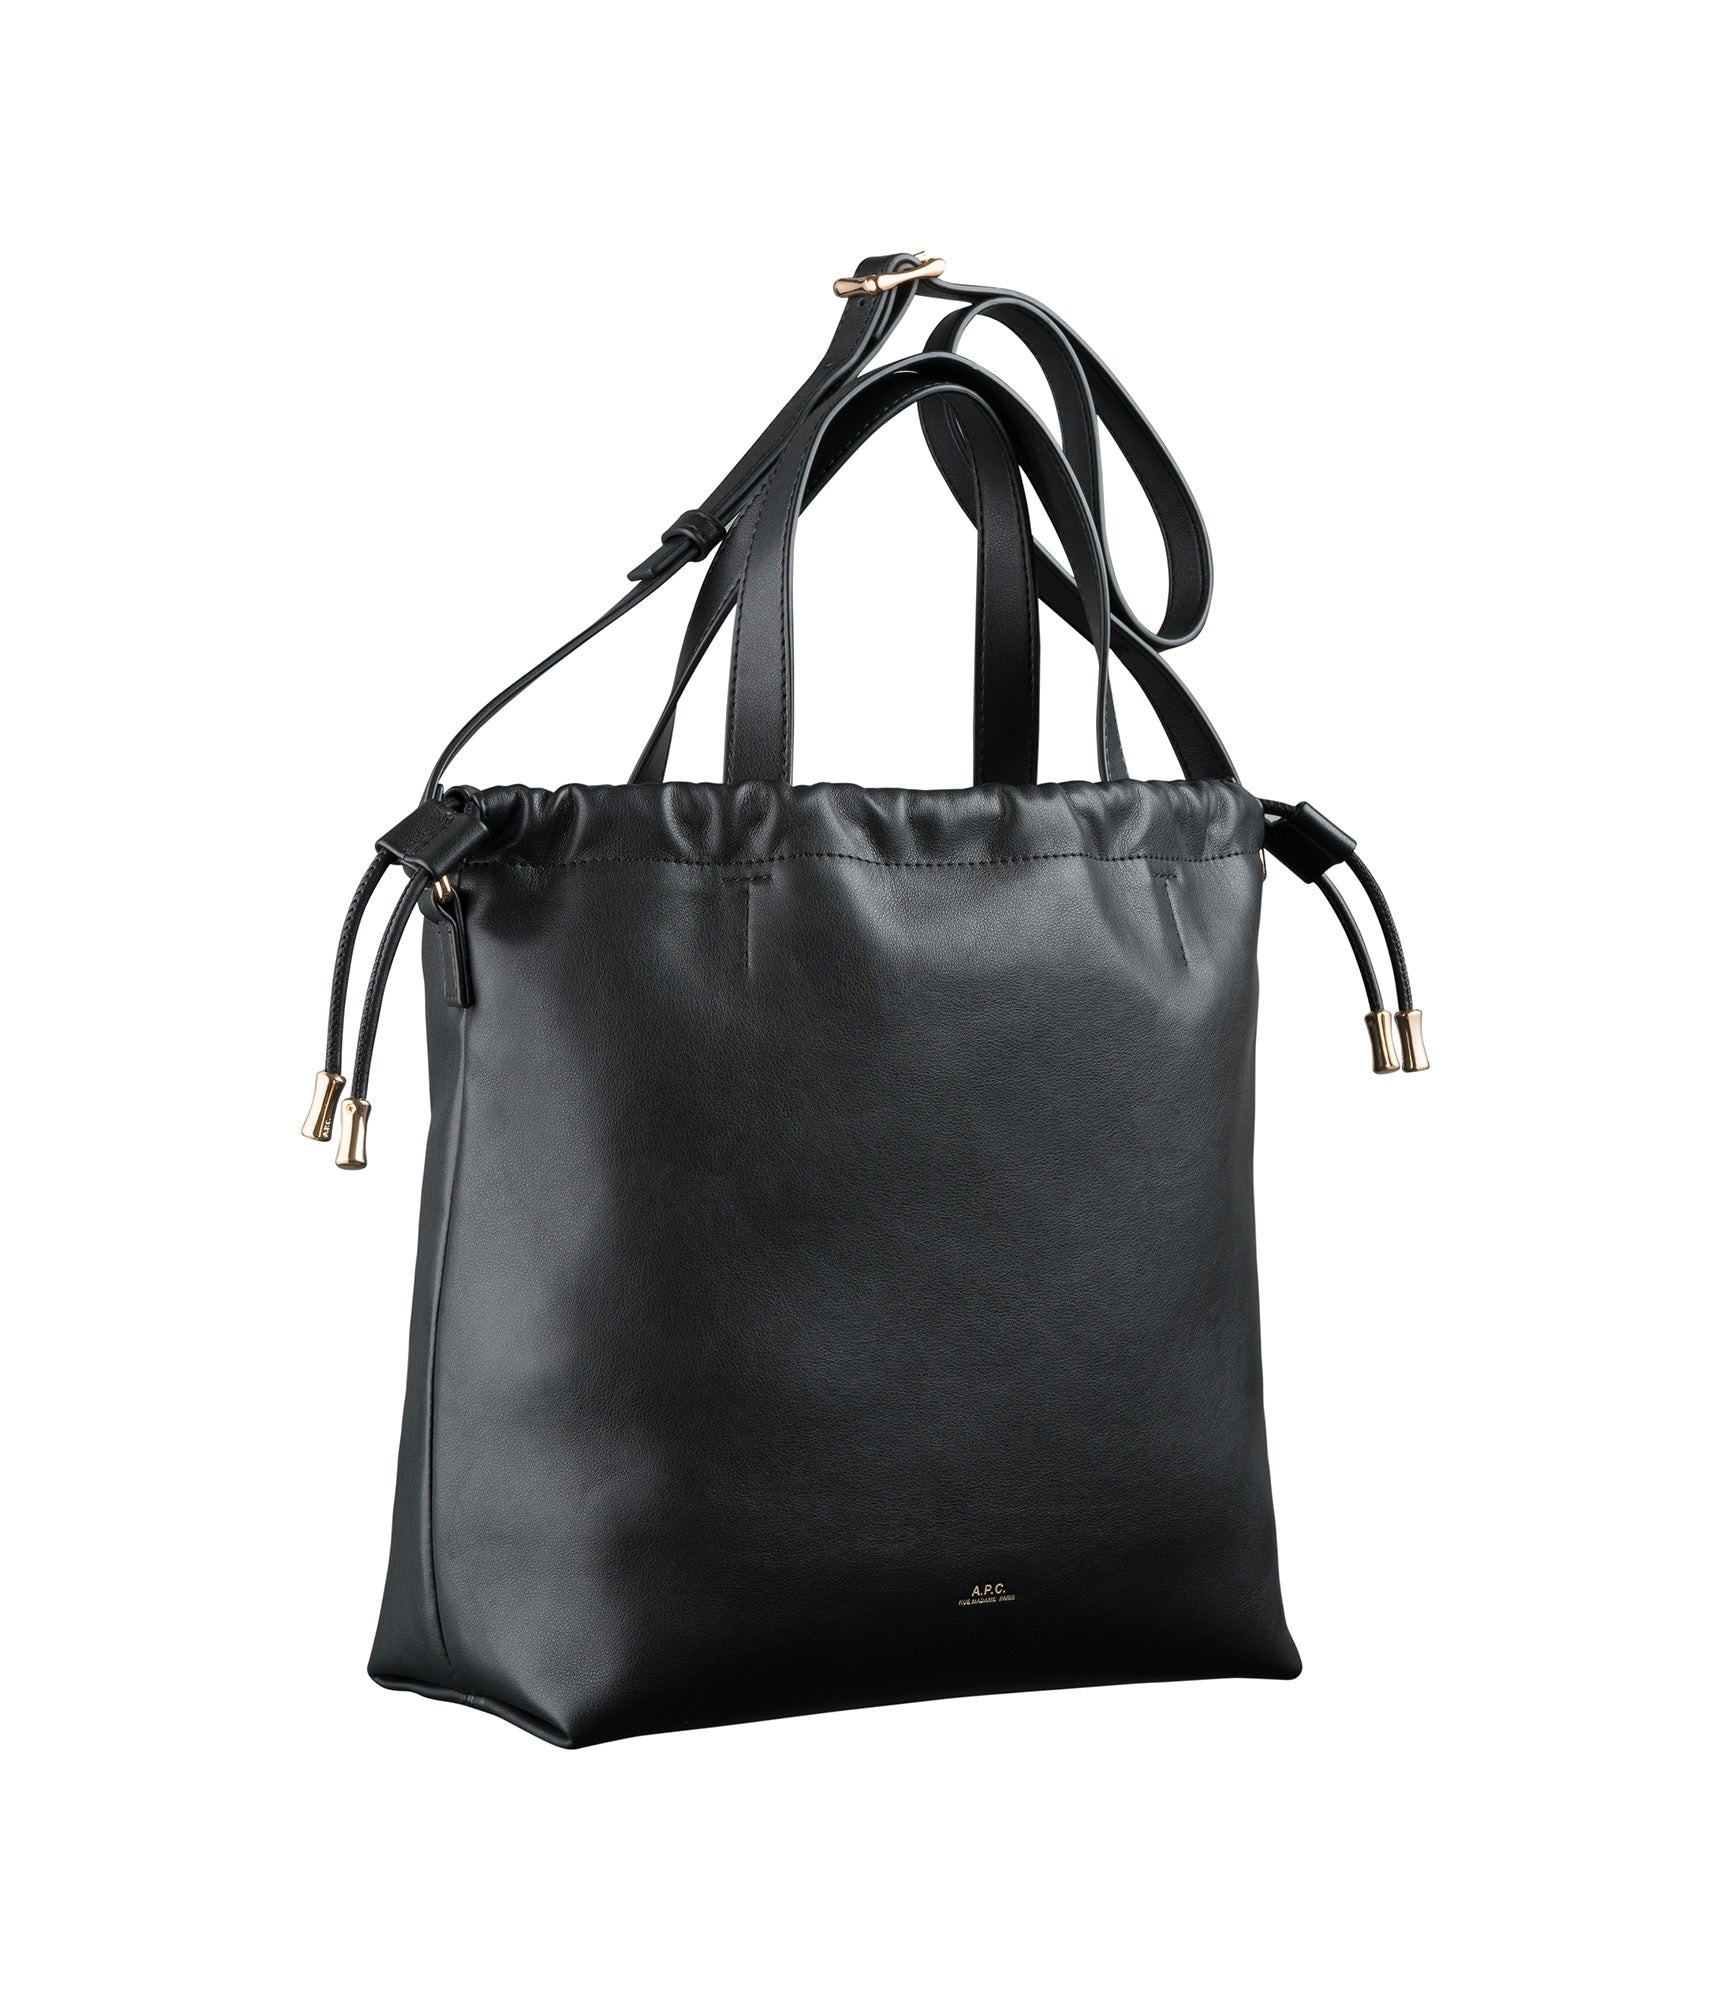 Ninon shopping bag - 3